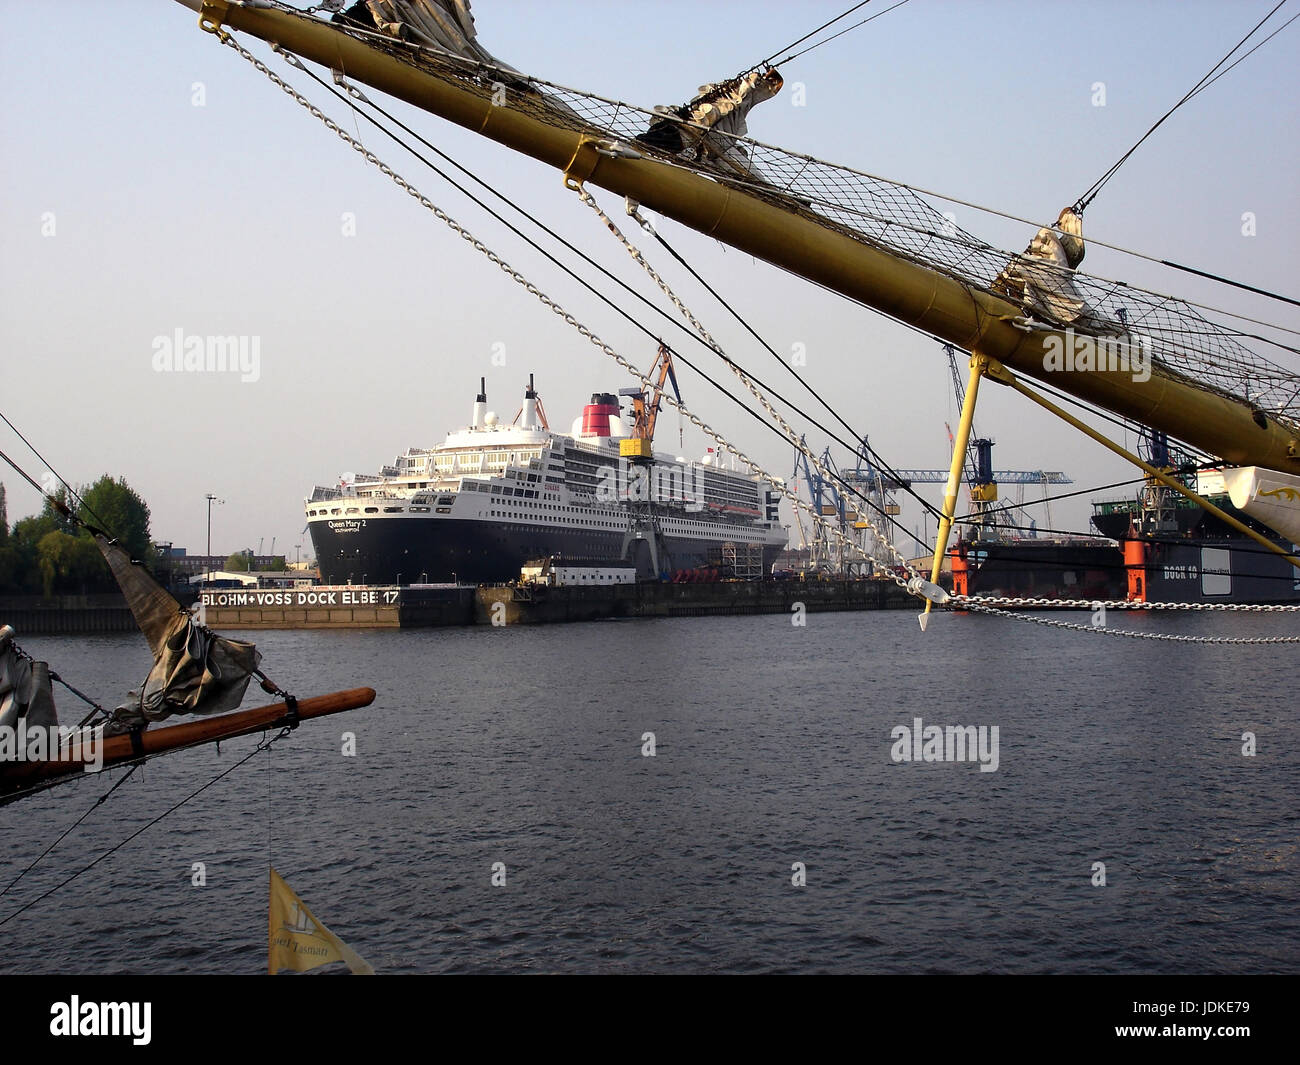 Germany, Hamburg, harbour, passenger liner queen Mary 2 in the dock, Deutschland, Hafen, Passagierschiff Queen Mary 2 im Dock Stock Photo